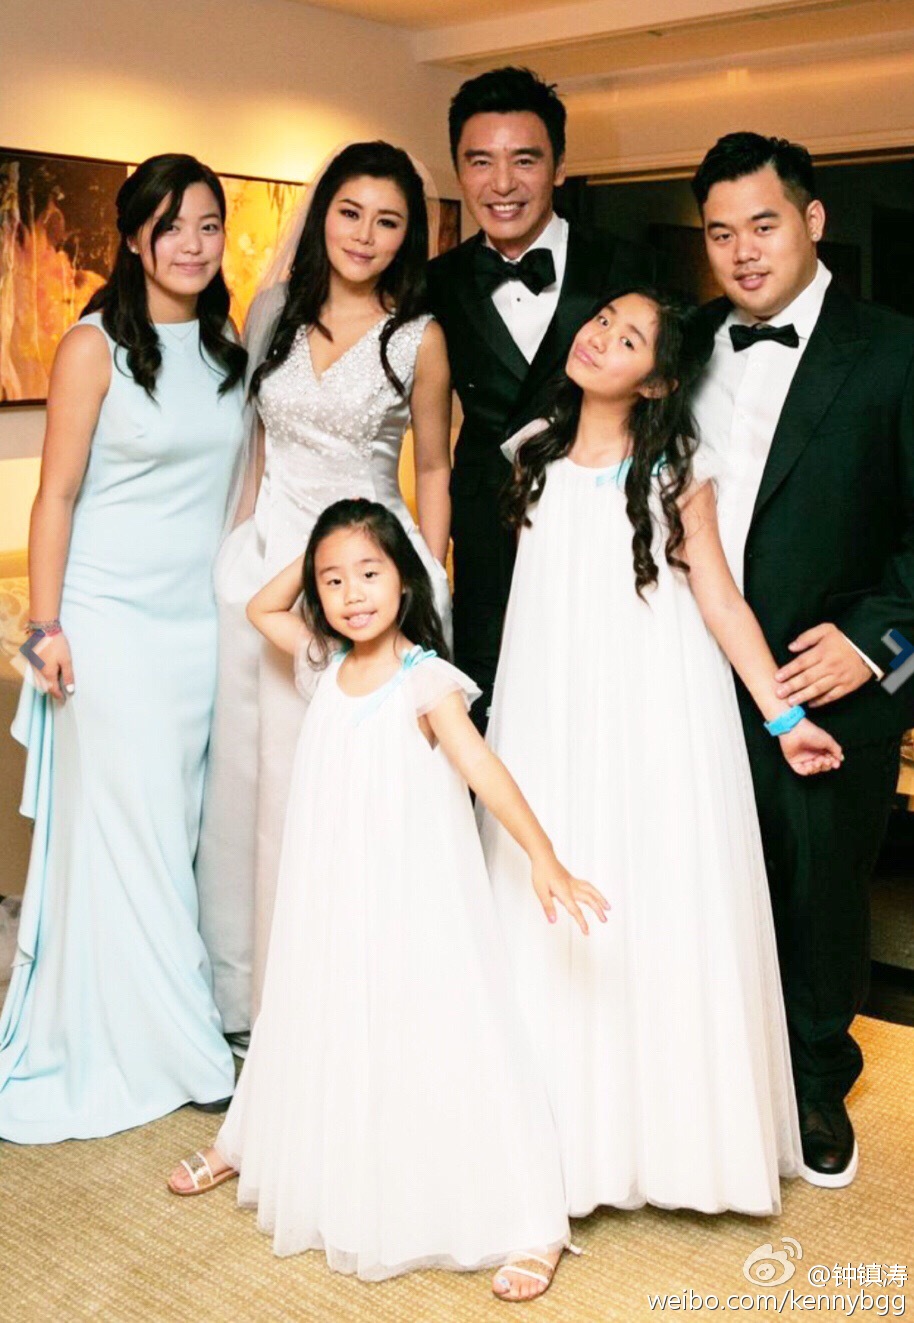 当年，锺镇涛与章小惠所生的一对子女锺嘉浚、锺嘉晴，也有出席婚礼祝婚父亲。